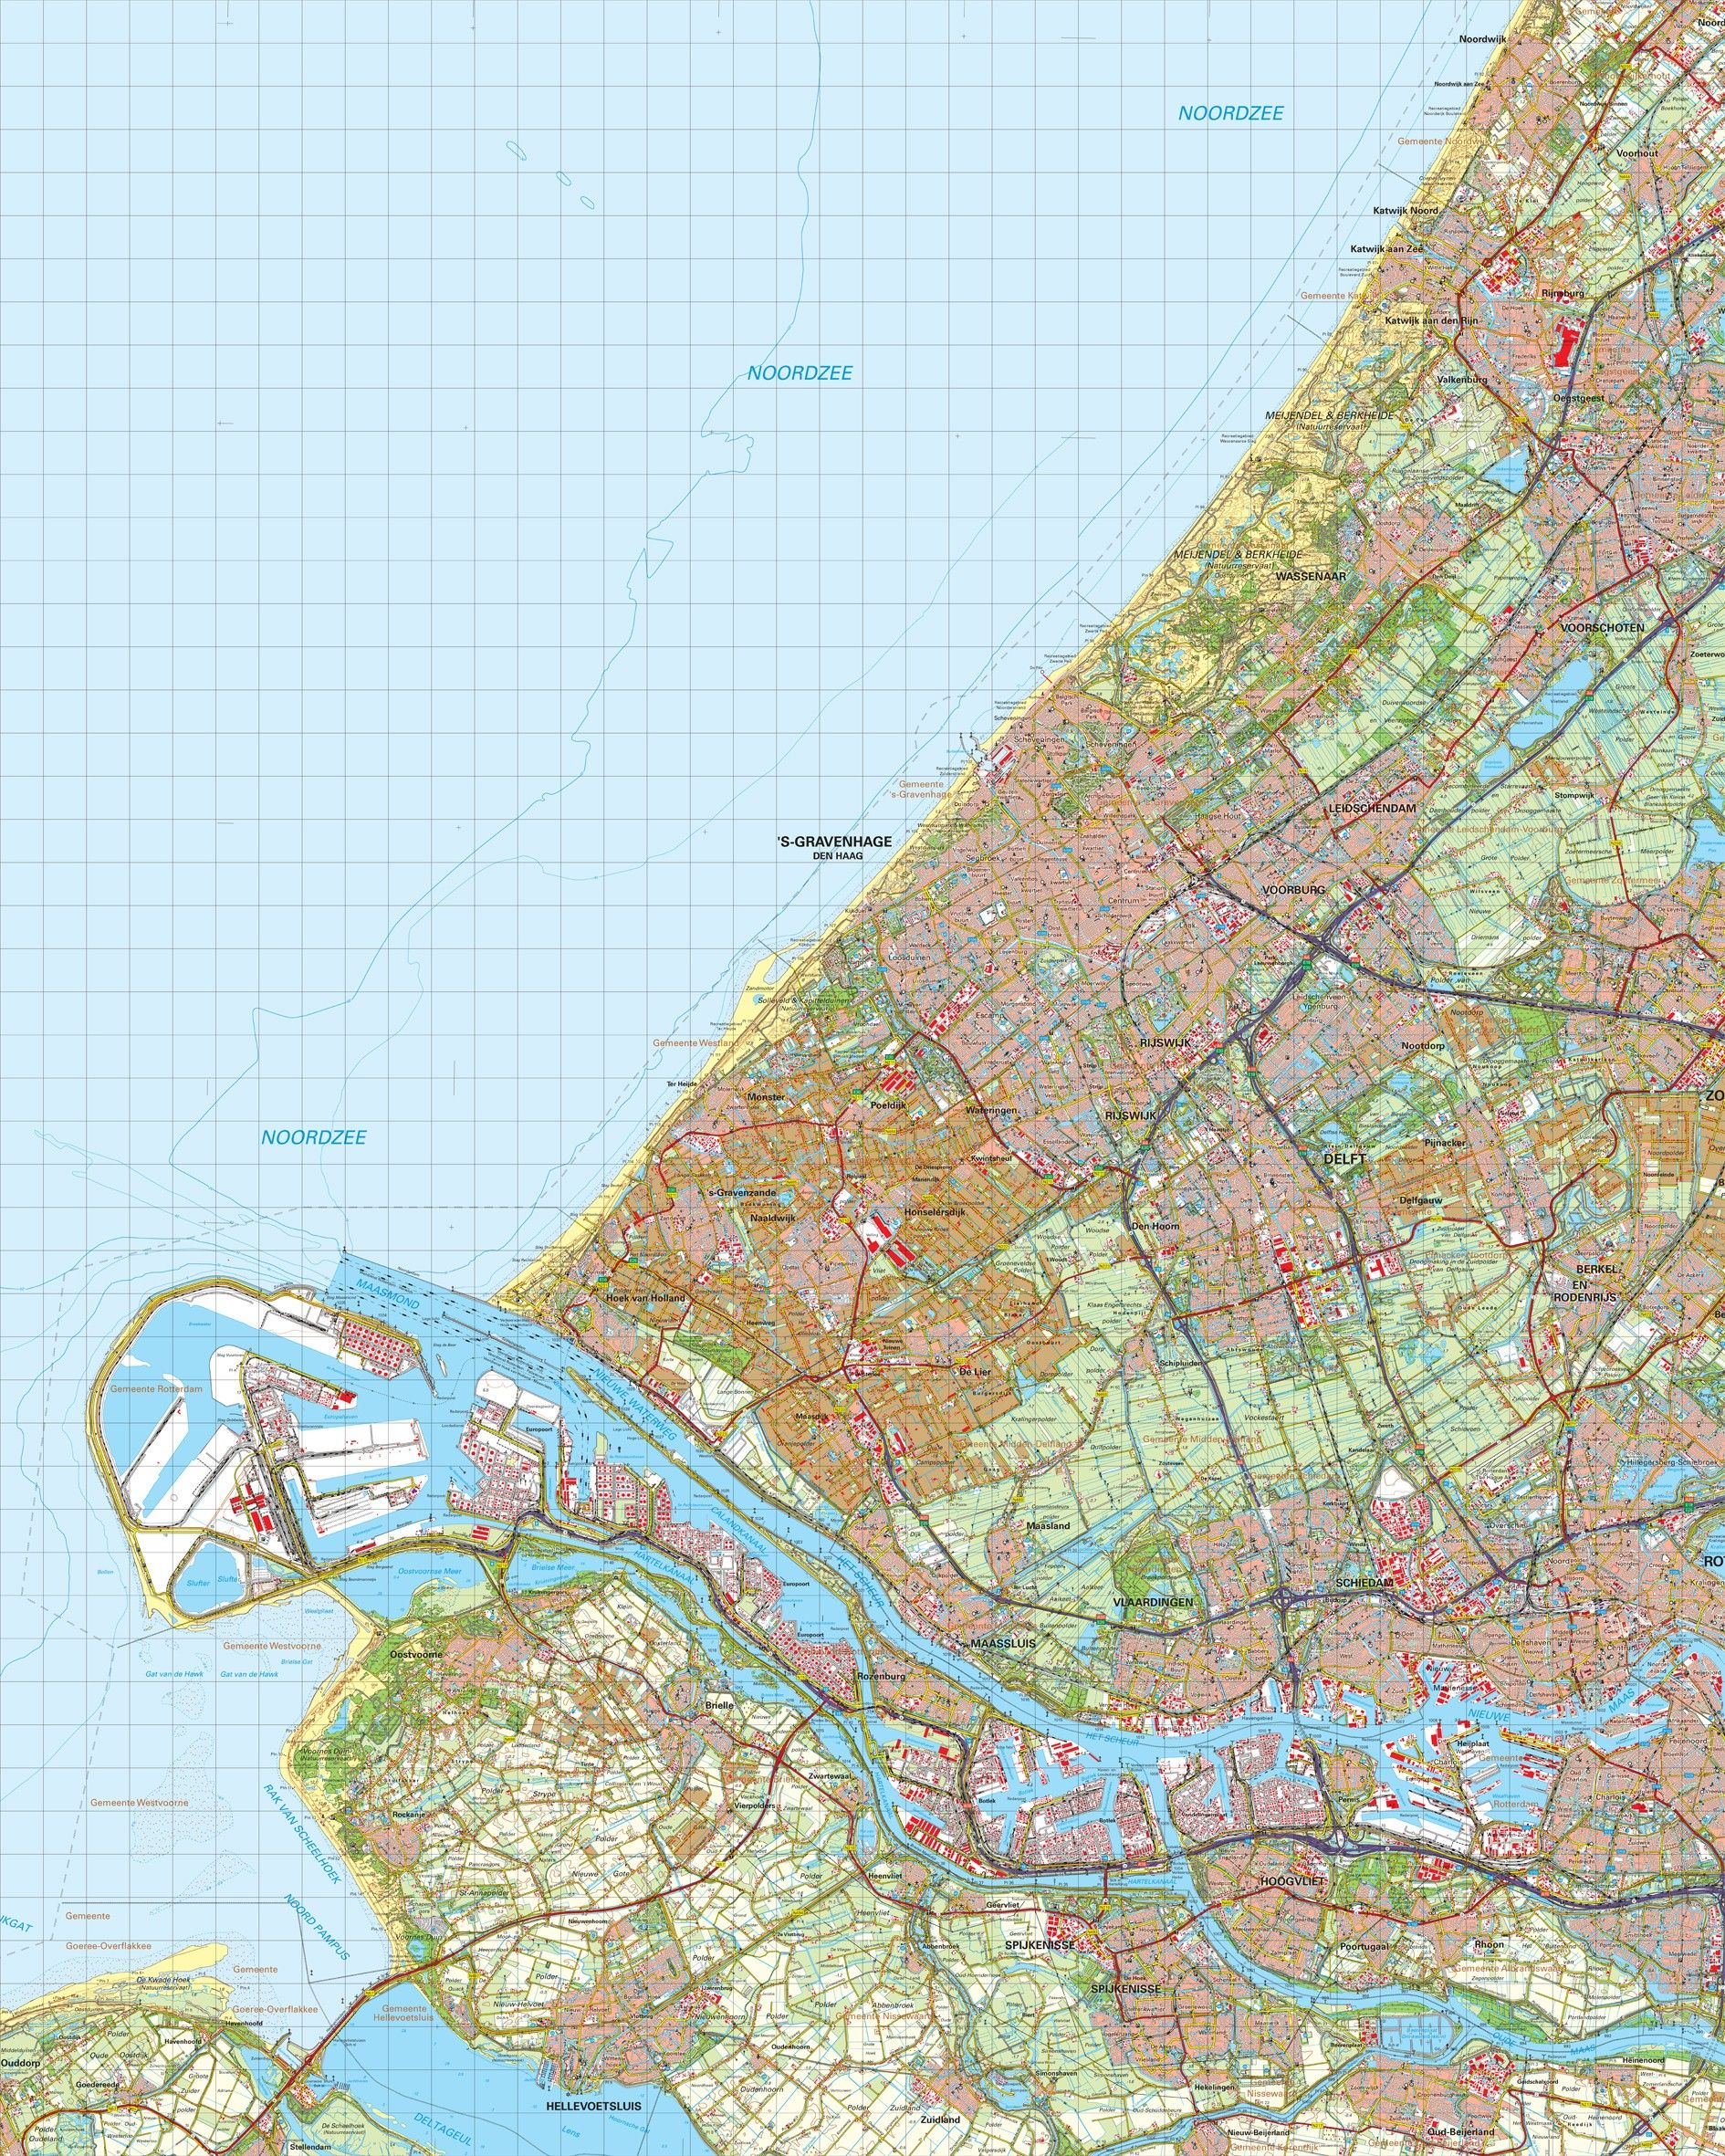 Topografische kaart schaal 1:50.000 (Oegstgeest Wassenaar Delft Den Haag Rotterdam)